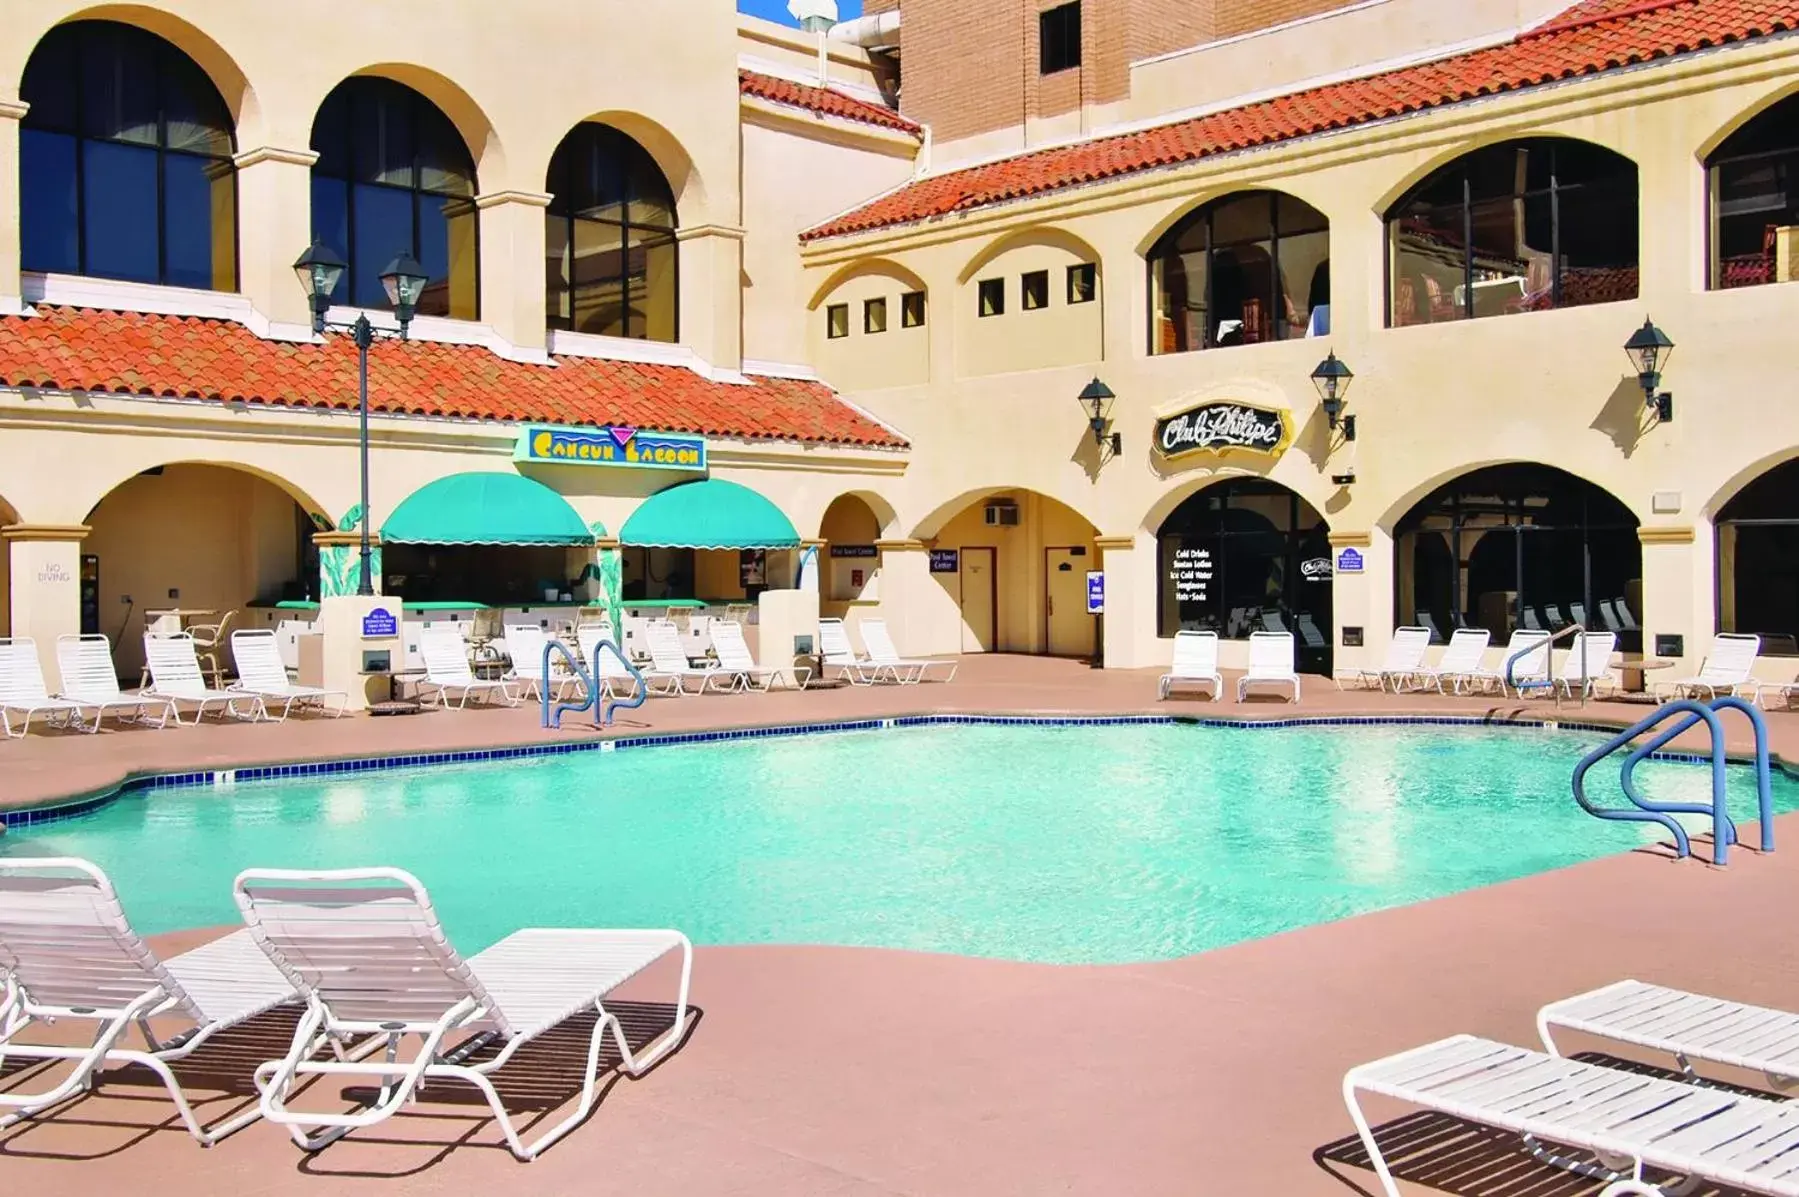 Swimming Pool in Harrah's Laughlin Beach Resort & Casino